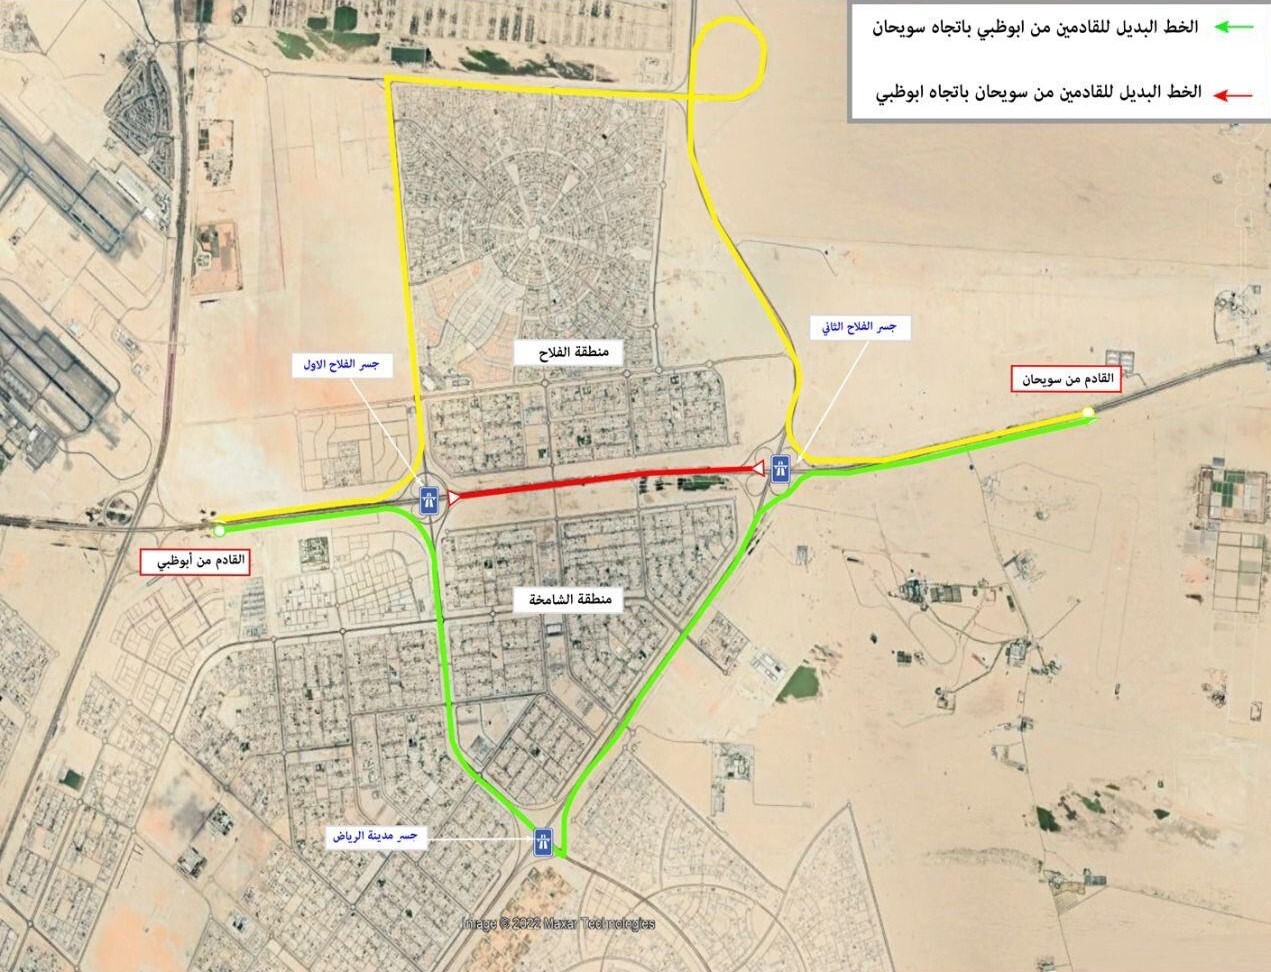 شرطة ودفاع مدني أبوظبي يؤكدان استمرار عمليات الإغلاق والتبريد لحادث طريق سويحان – أبوظبي